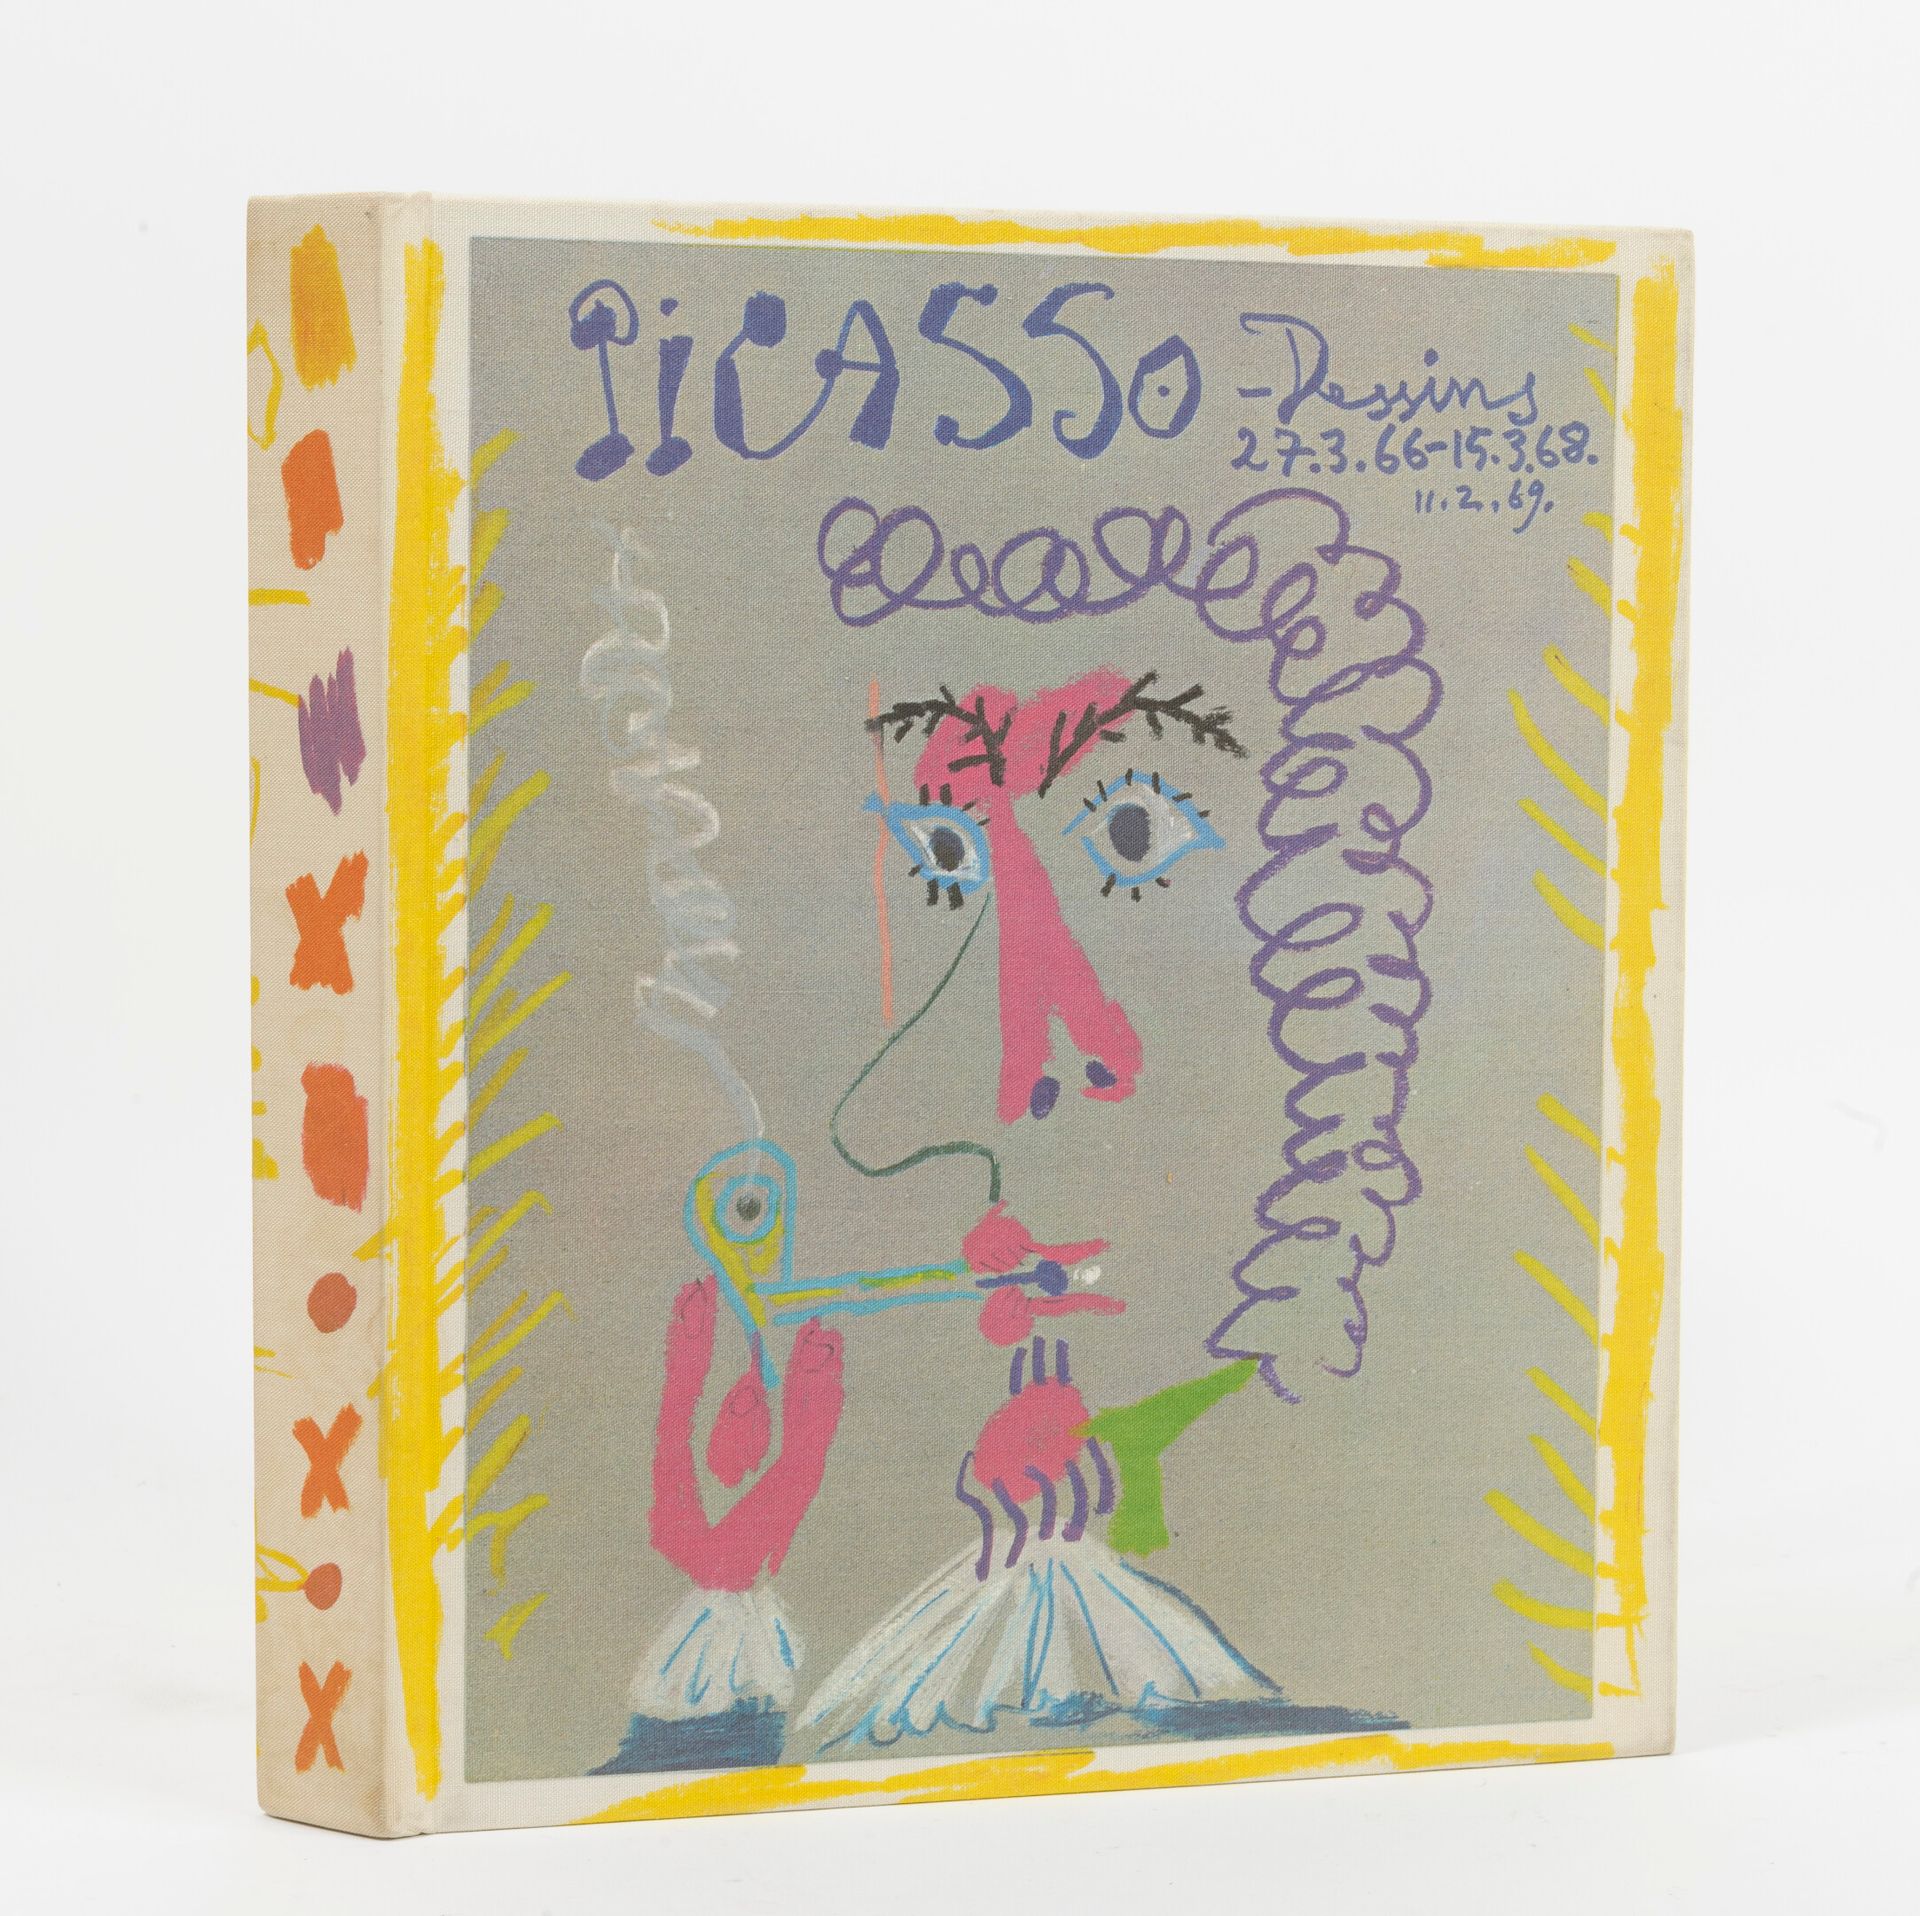 FELD, Charles Picasso, I disegni dal 27.3.66 al 15.3.68. 

Prefazione di René Ch&hellip;